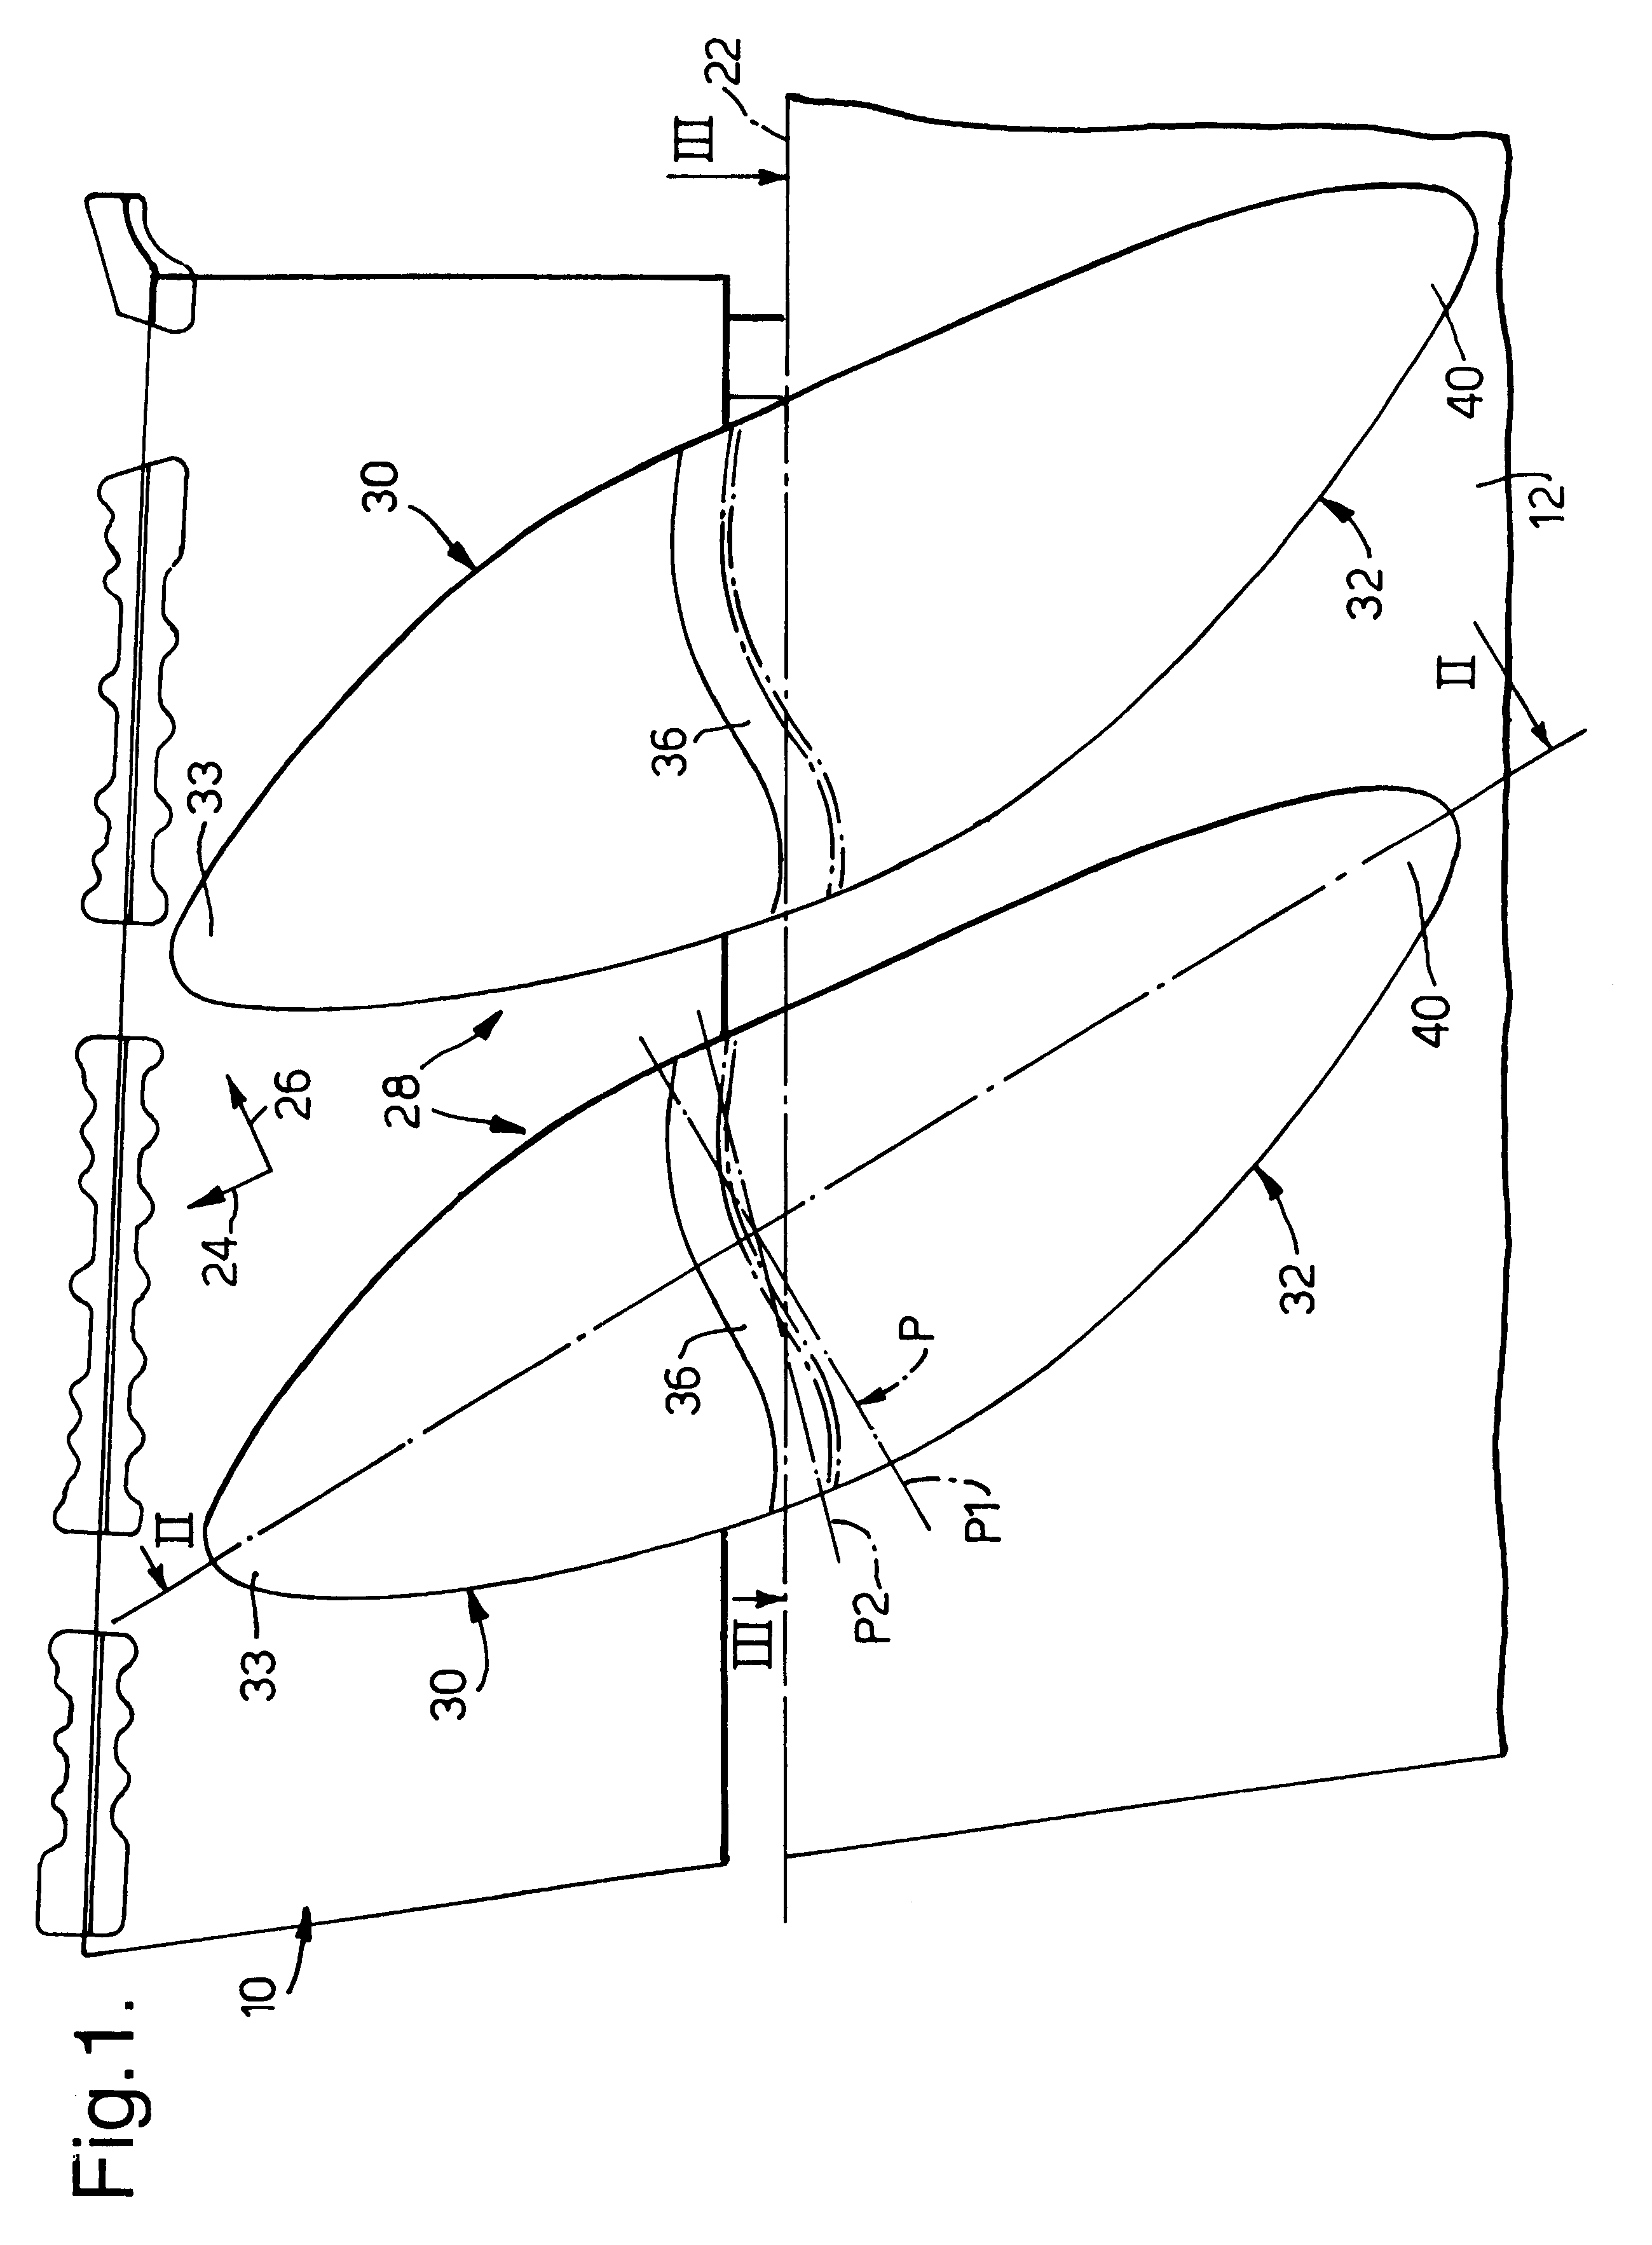 Fairing arrangement for an aircraft